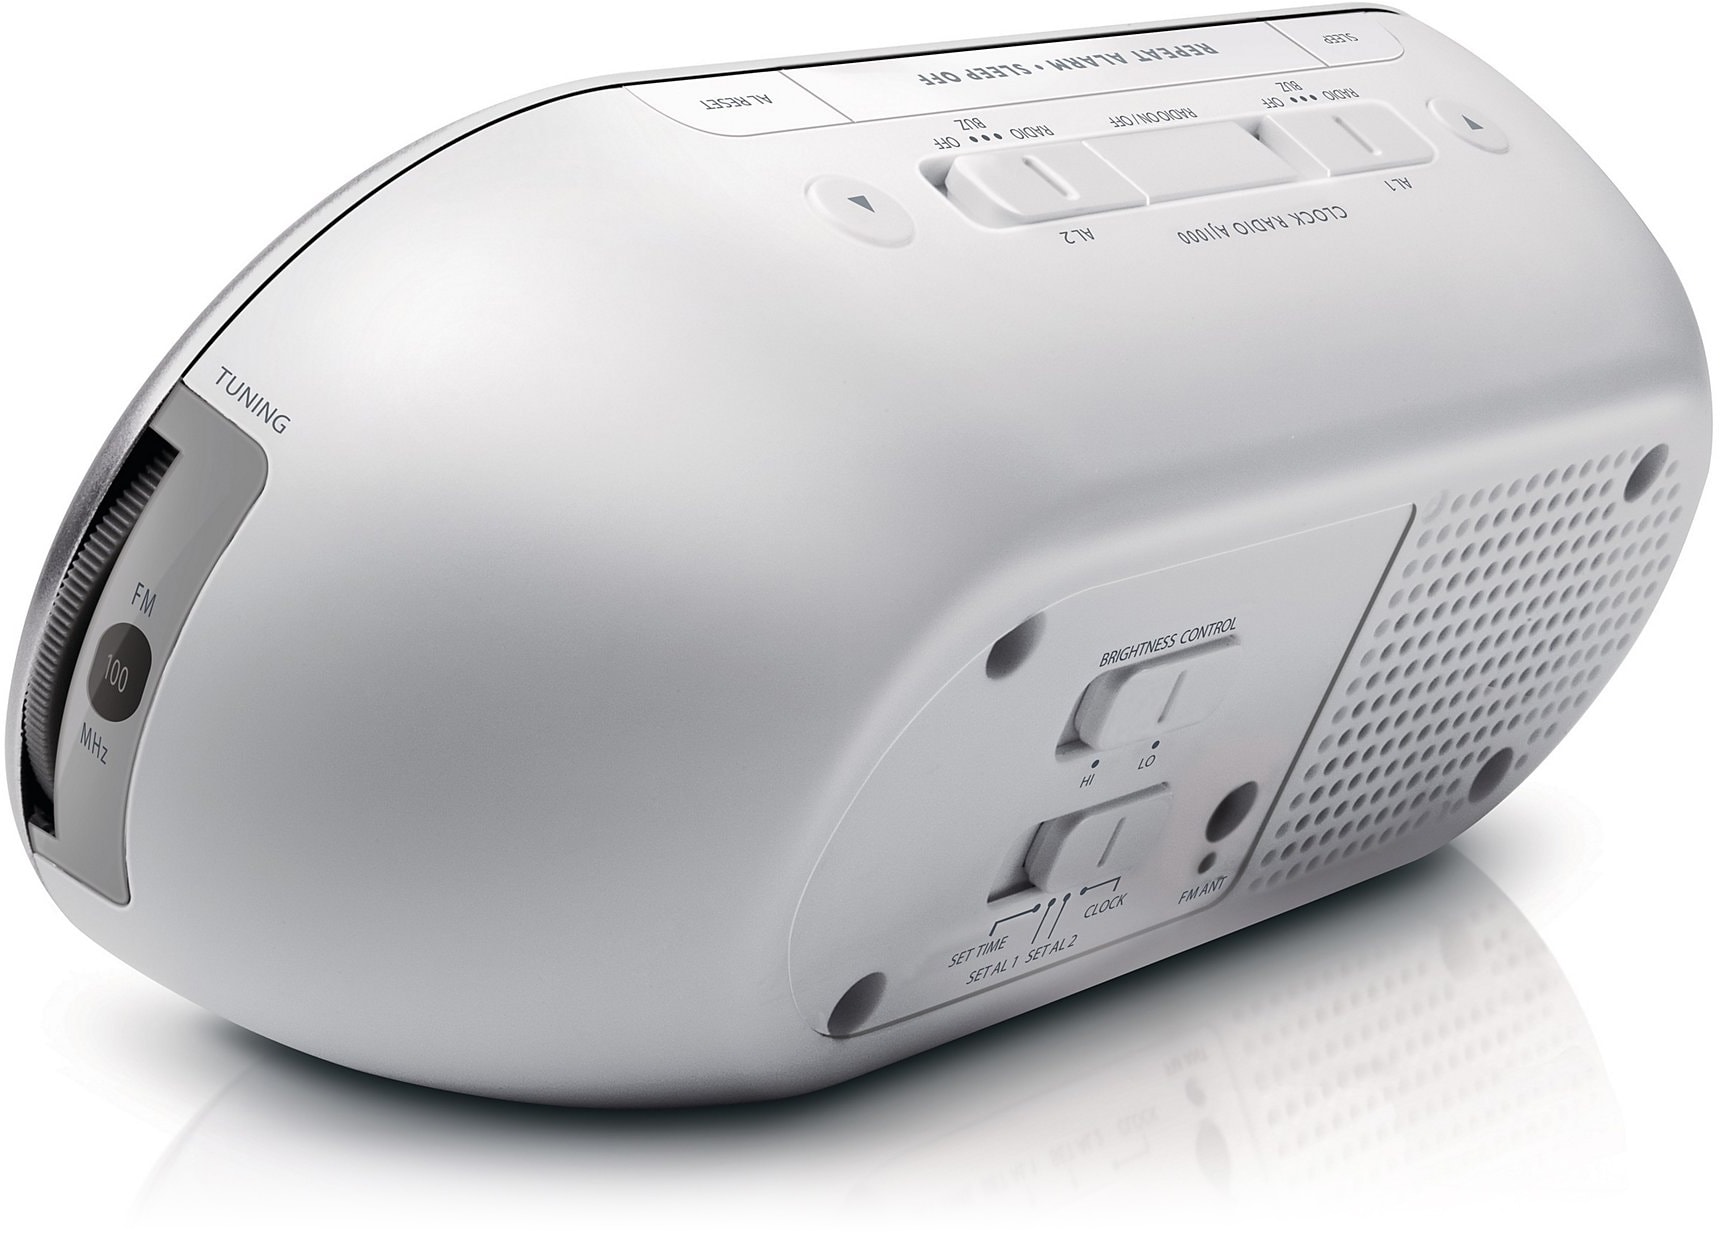 Philips Radio-réveil Design Miroir avec Tuner FM, Affichage Digital avec  Double Alarme, Mise en Veille programmable et répétition de l'alarme